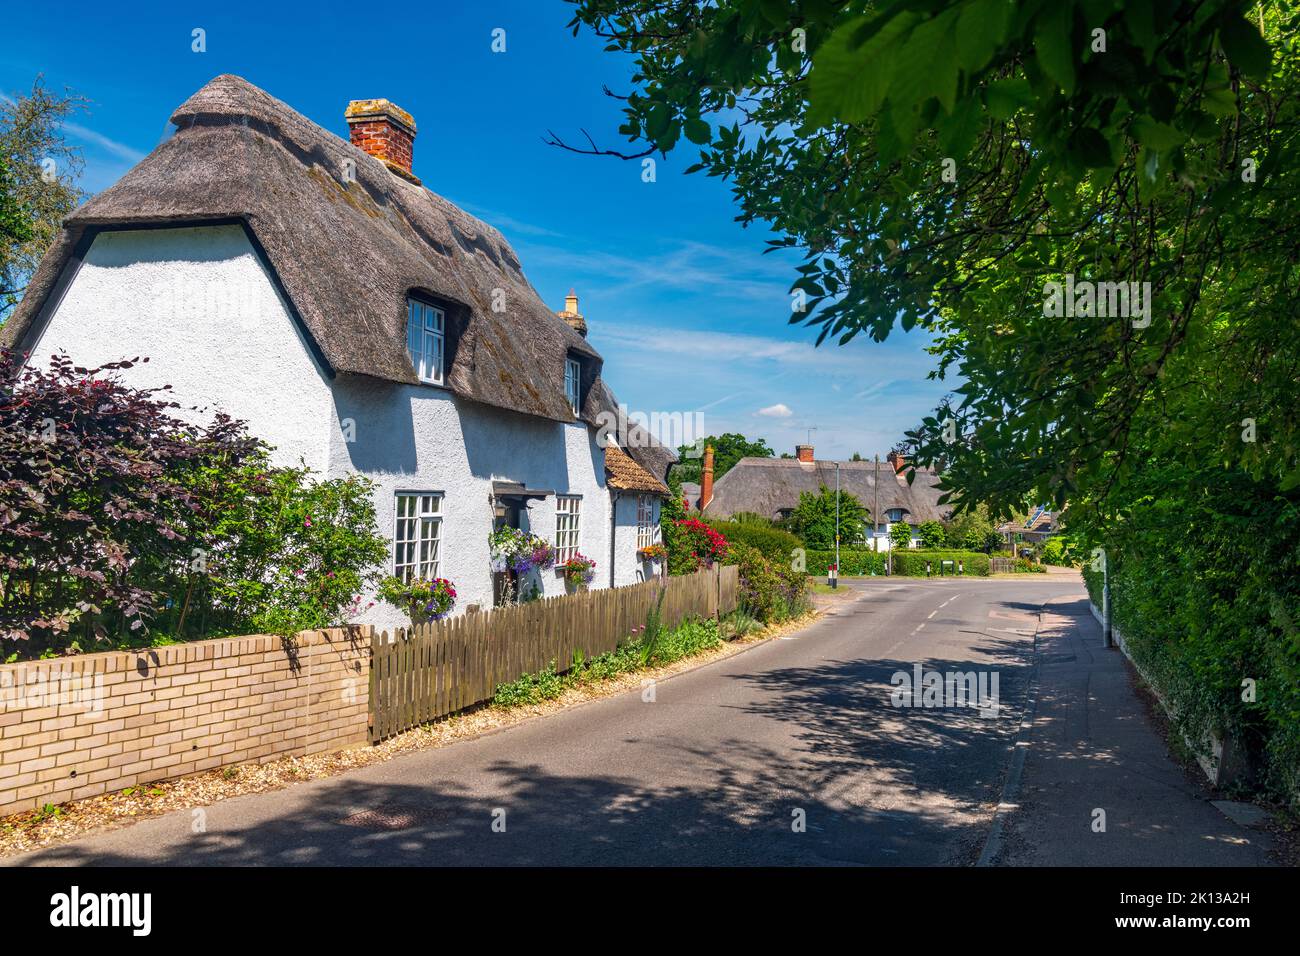 Maison traditionnelle de chaume, Bourn, Cambridgeshire, Angleterre, Royaume-Uni, Europe Banque D'Images